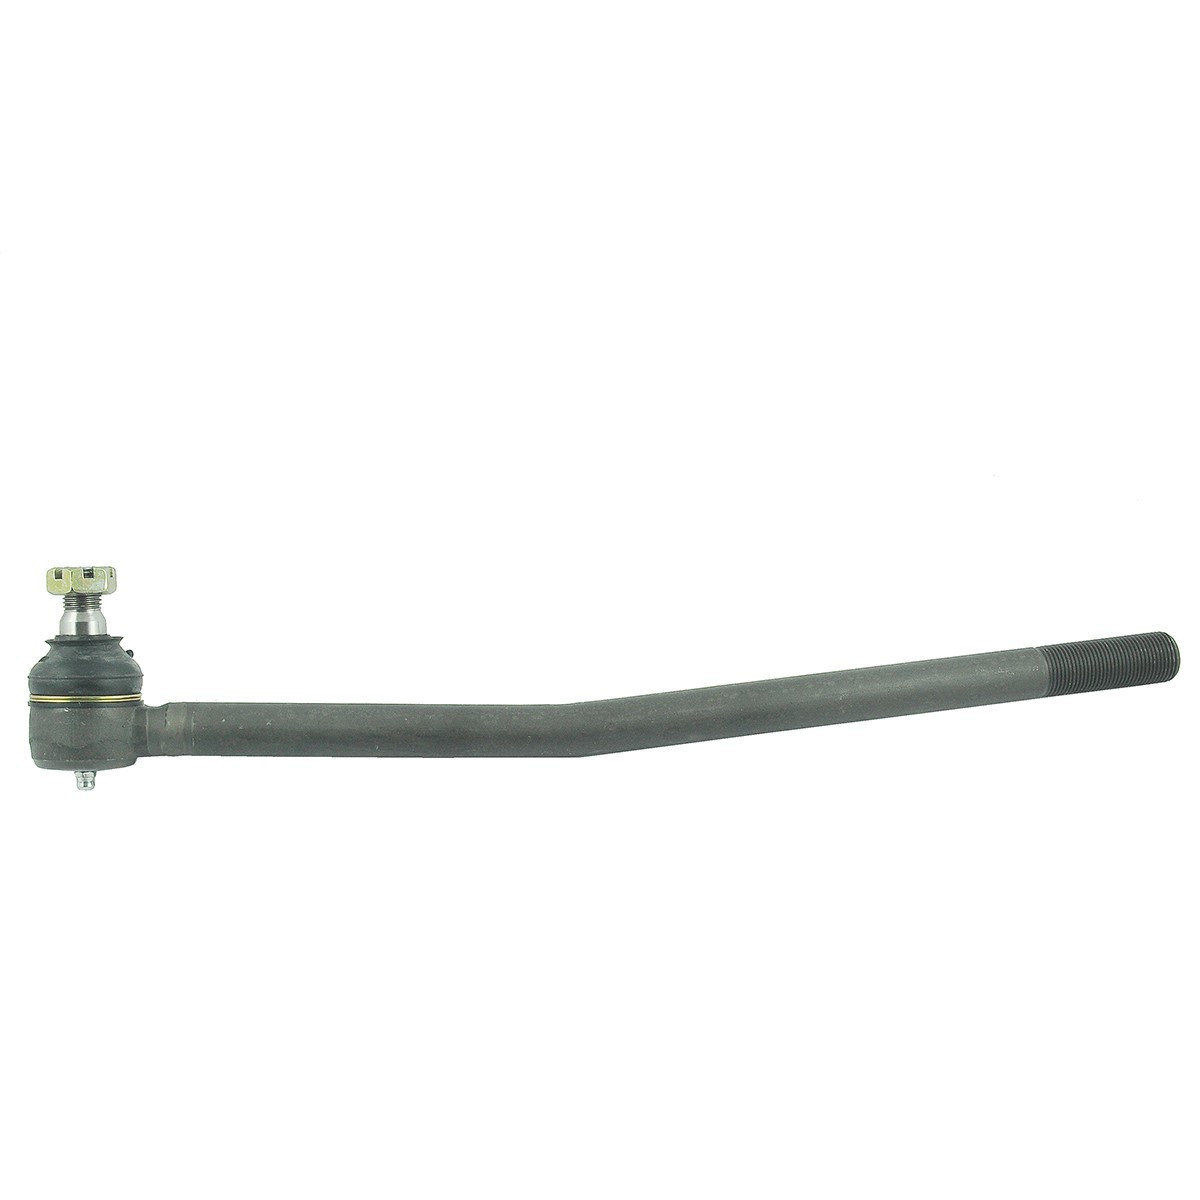 Tie rod end 74 x 430 mm / RIGHT / Kubota L3408 / 6-23-133-18